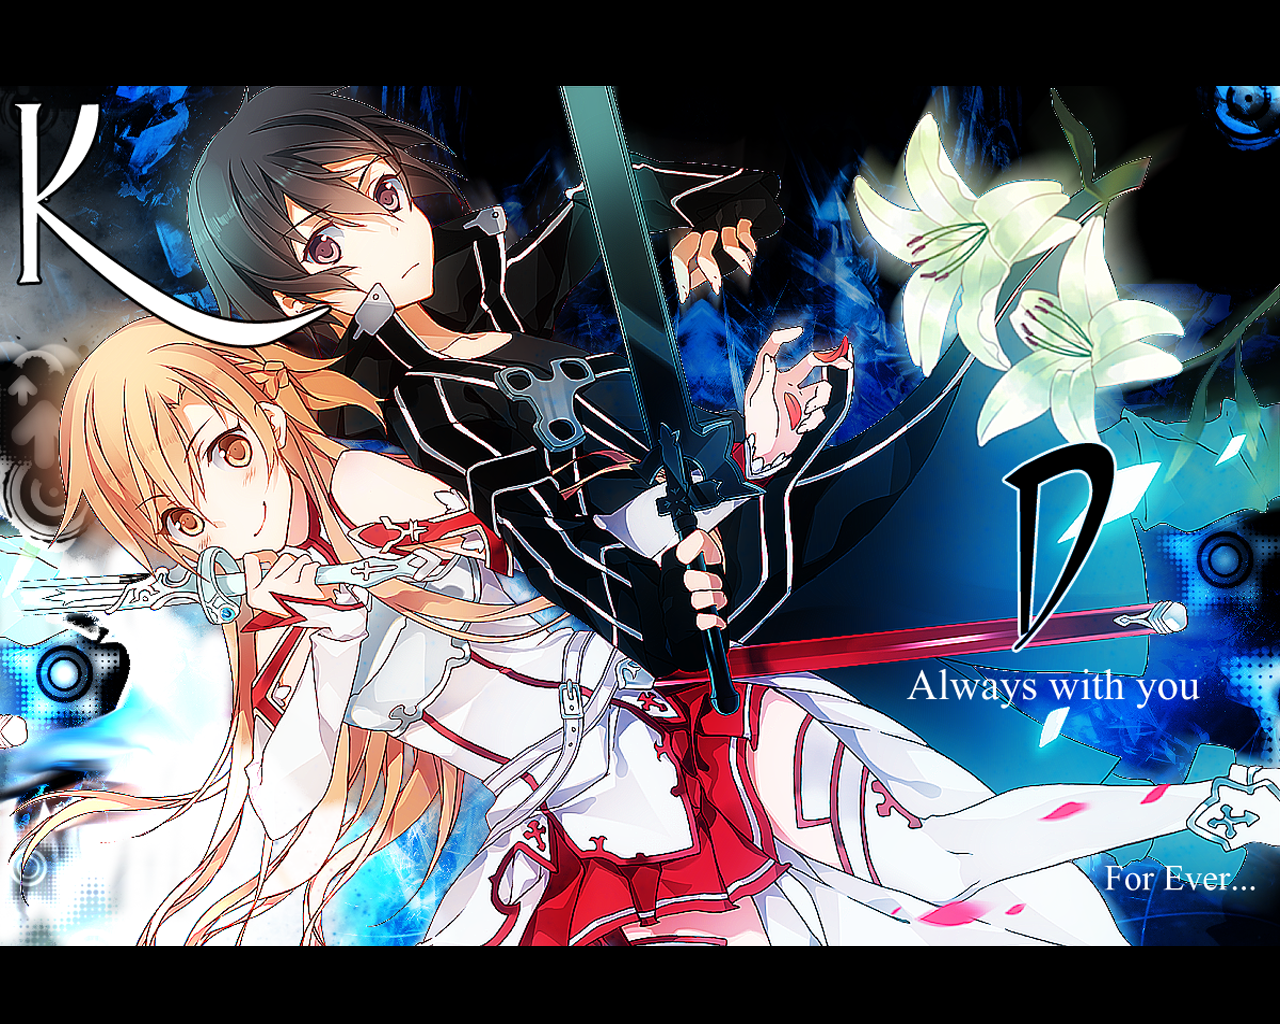 Image Sword Art Online 2012 Anime Girls 1920x1080